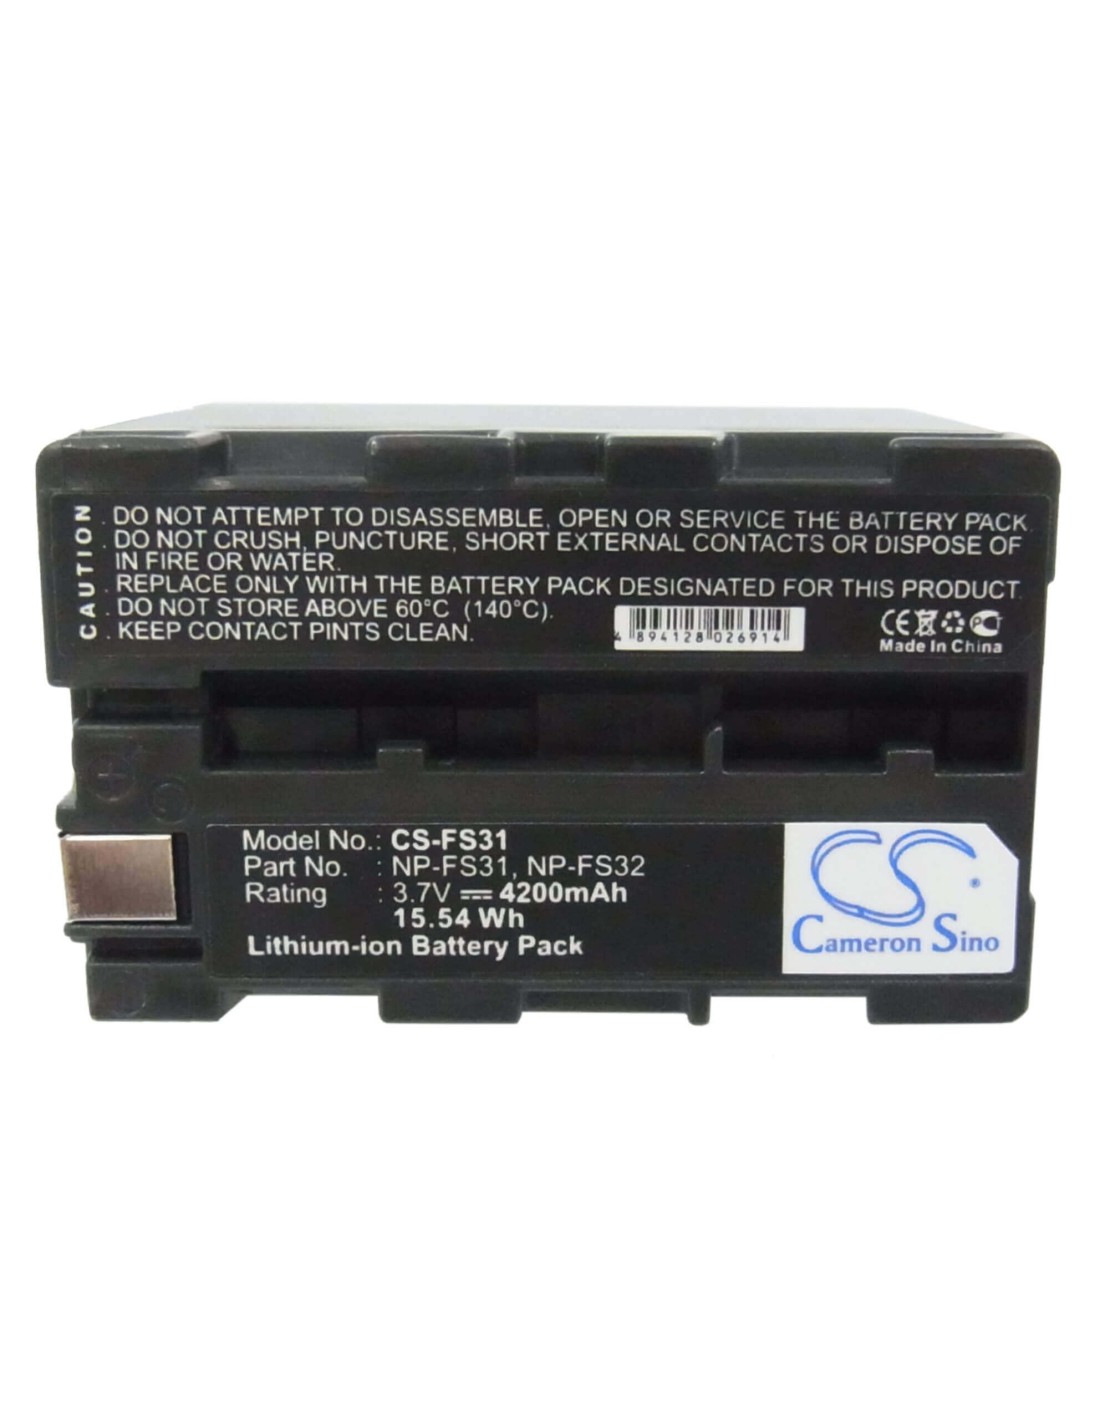 Battery for Sony Dcr-pc1, Dcr-pc1e, Dcr-pc2, Dcr-pc2e, 3.7V, 4200mAh - 15.54Wh